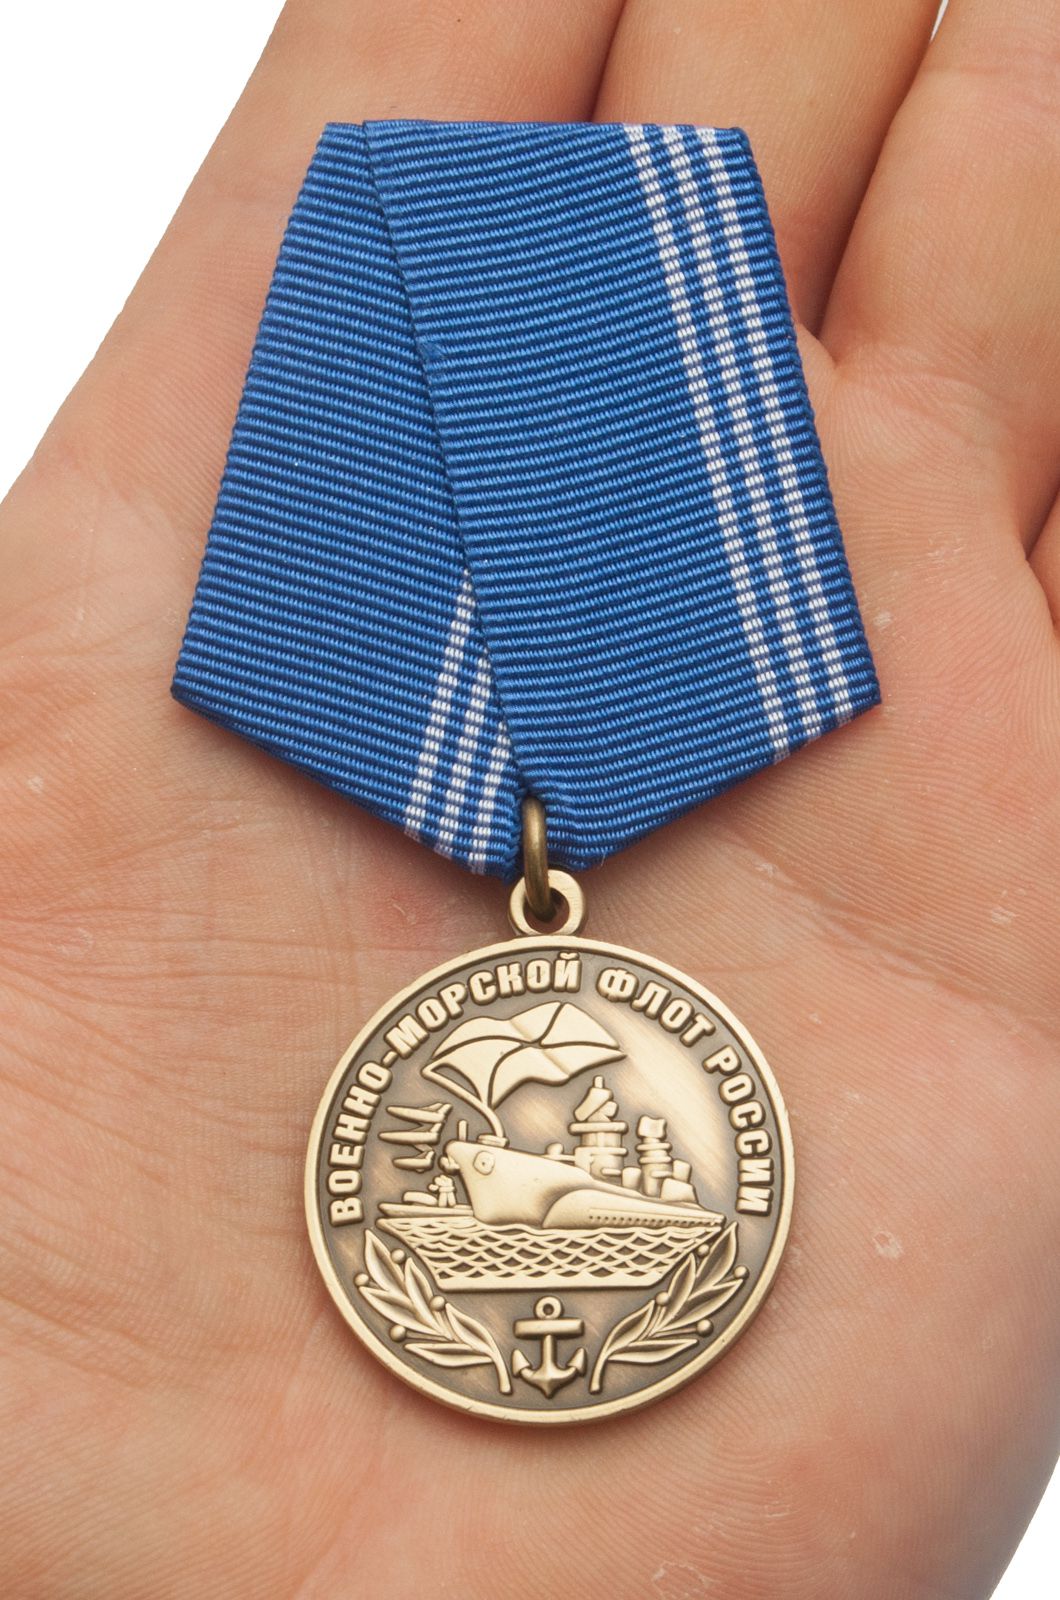 Медаль "Военно-морской флот России" 